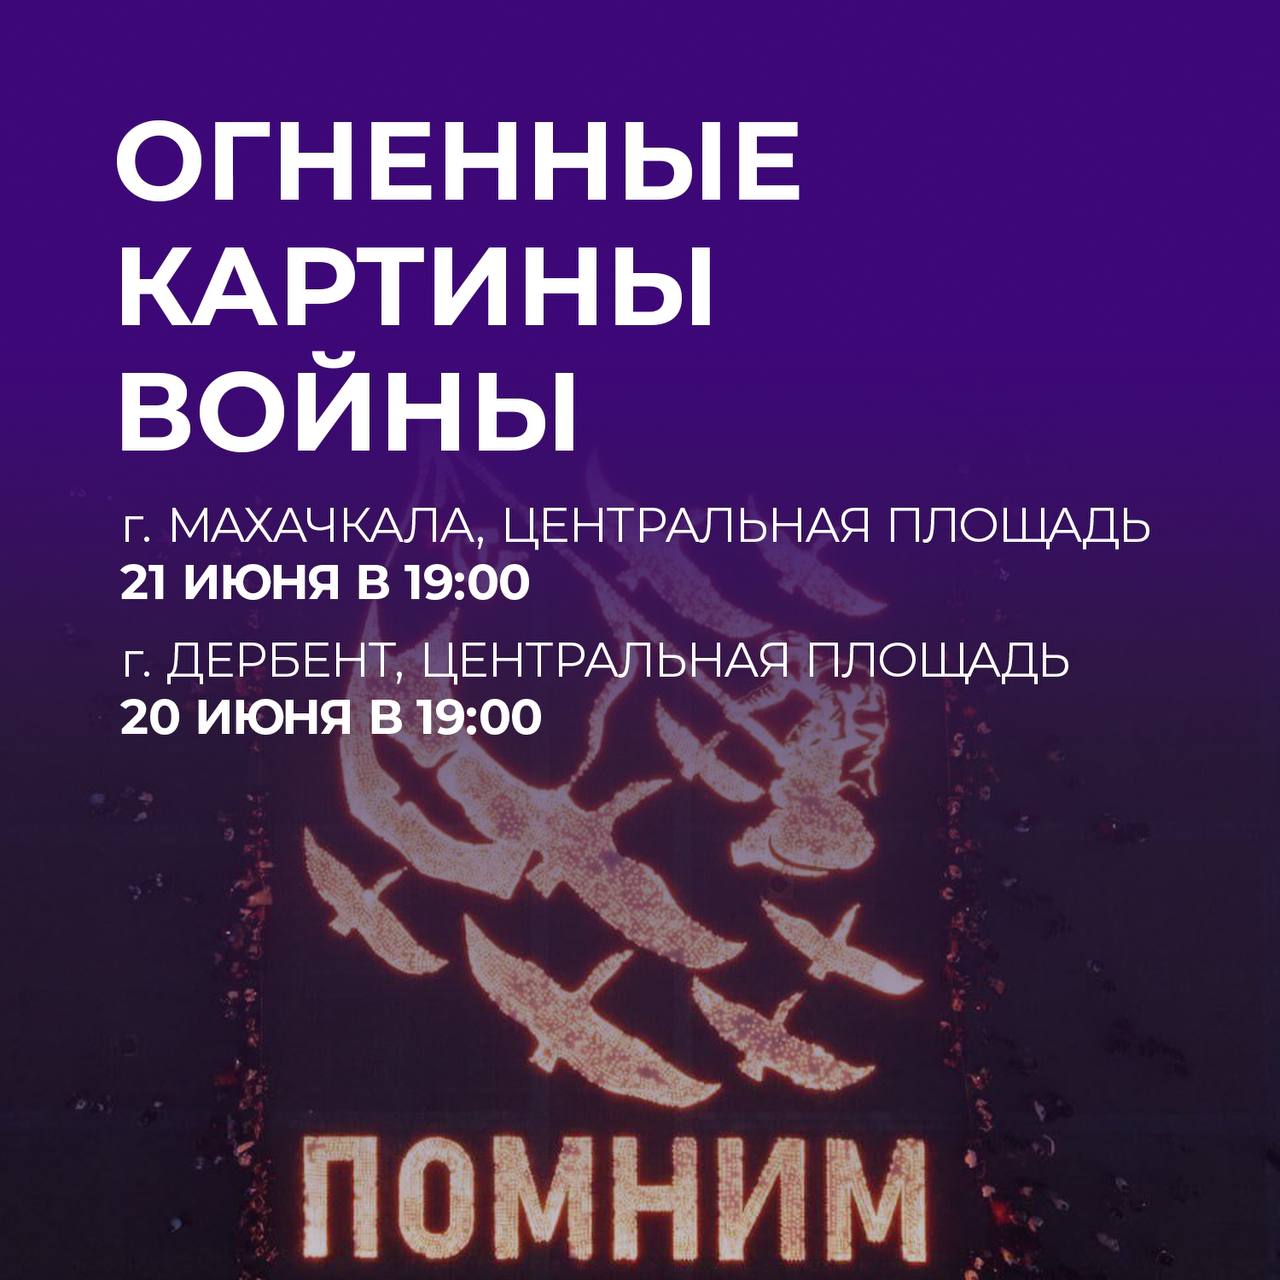 В Дагестане пройдут масштабные акции в честь героев Великой Отечественной войны